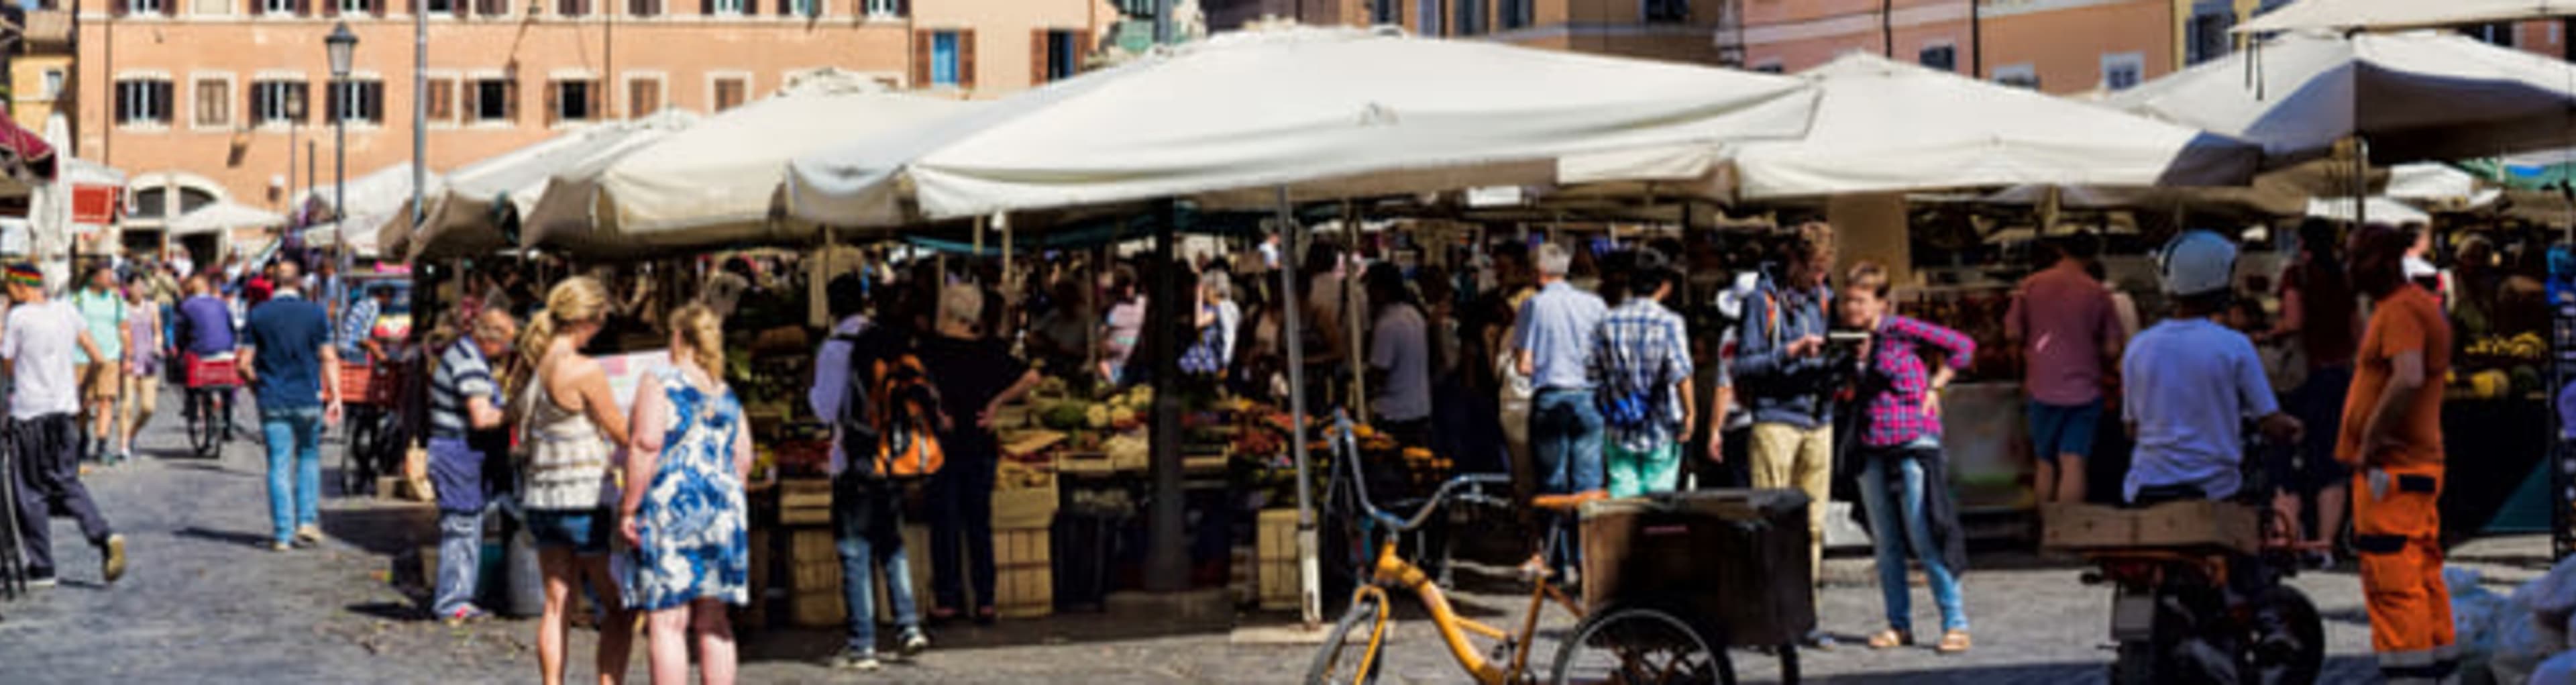 Market stalls on Campo dei Fiori in Rome